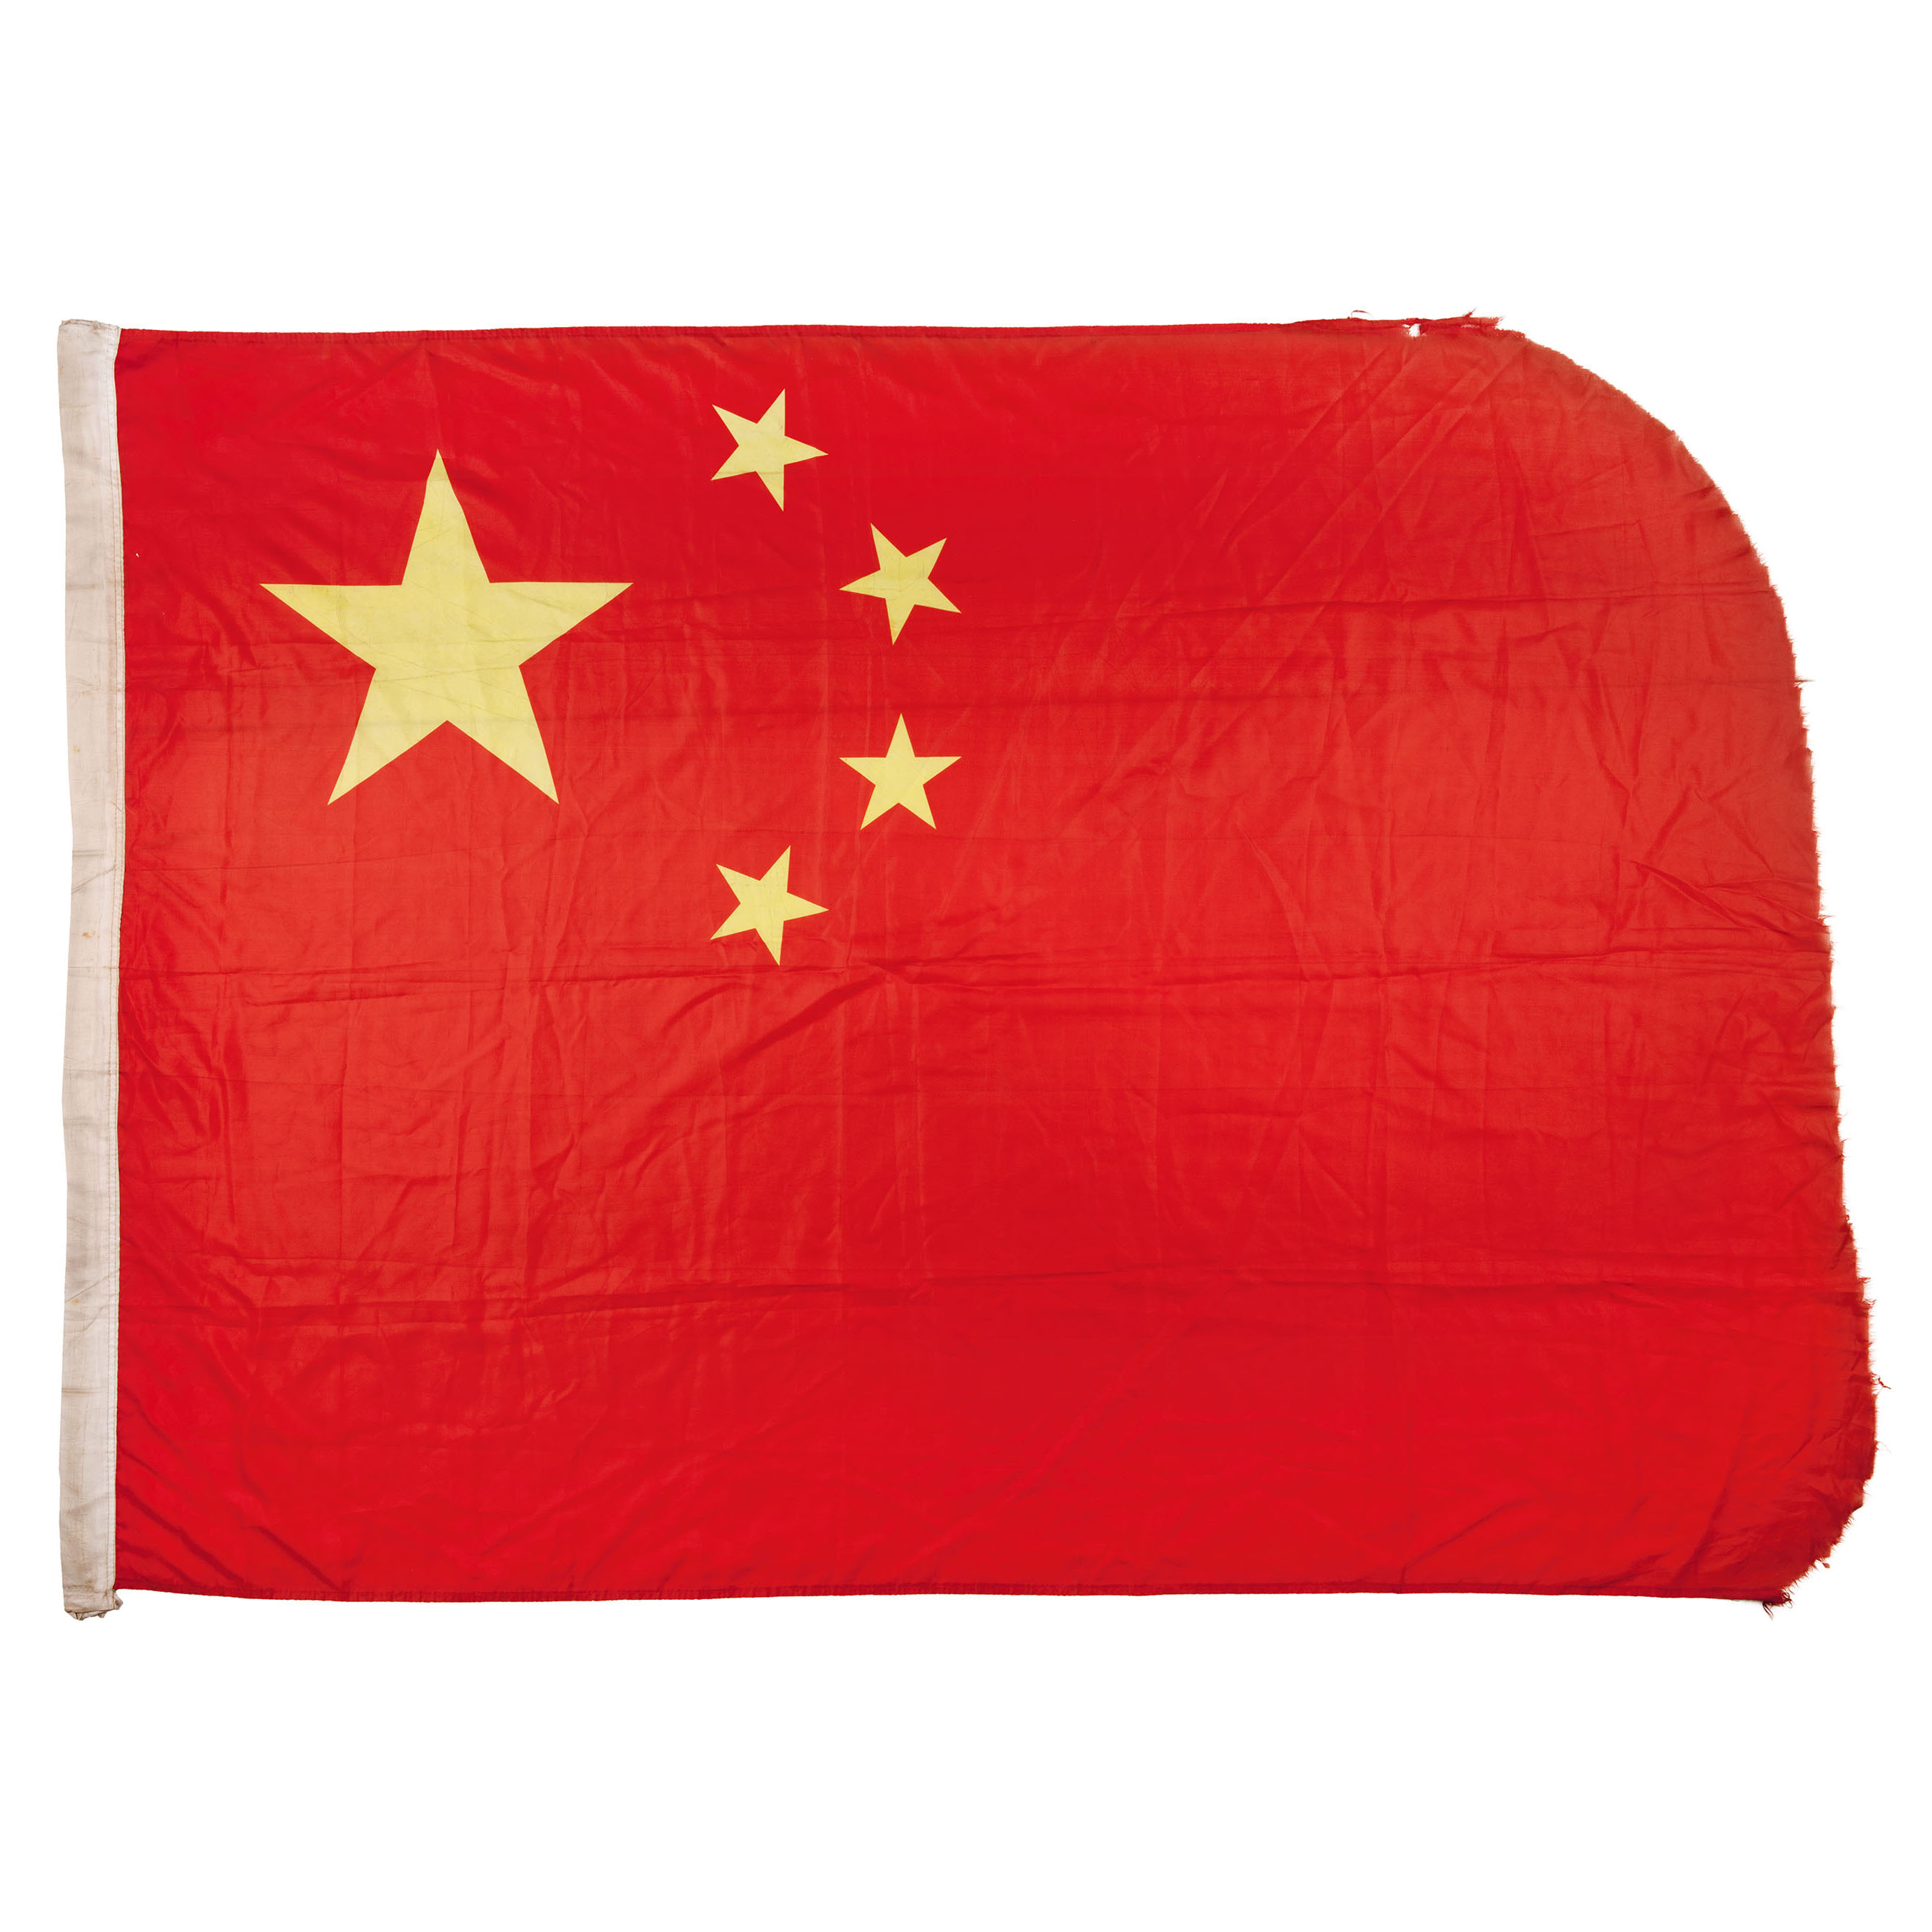 王继才夫妇在江苏省开山岛守岛时升的国旗